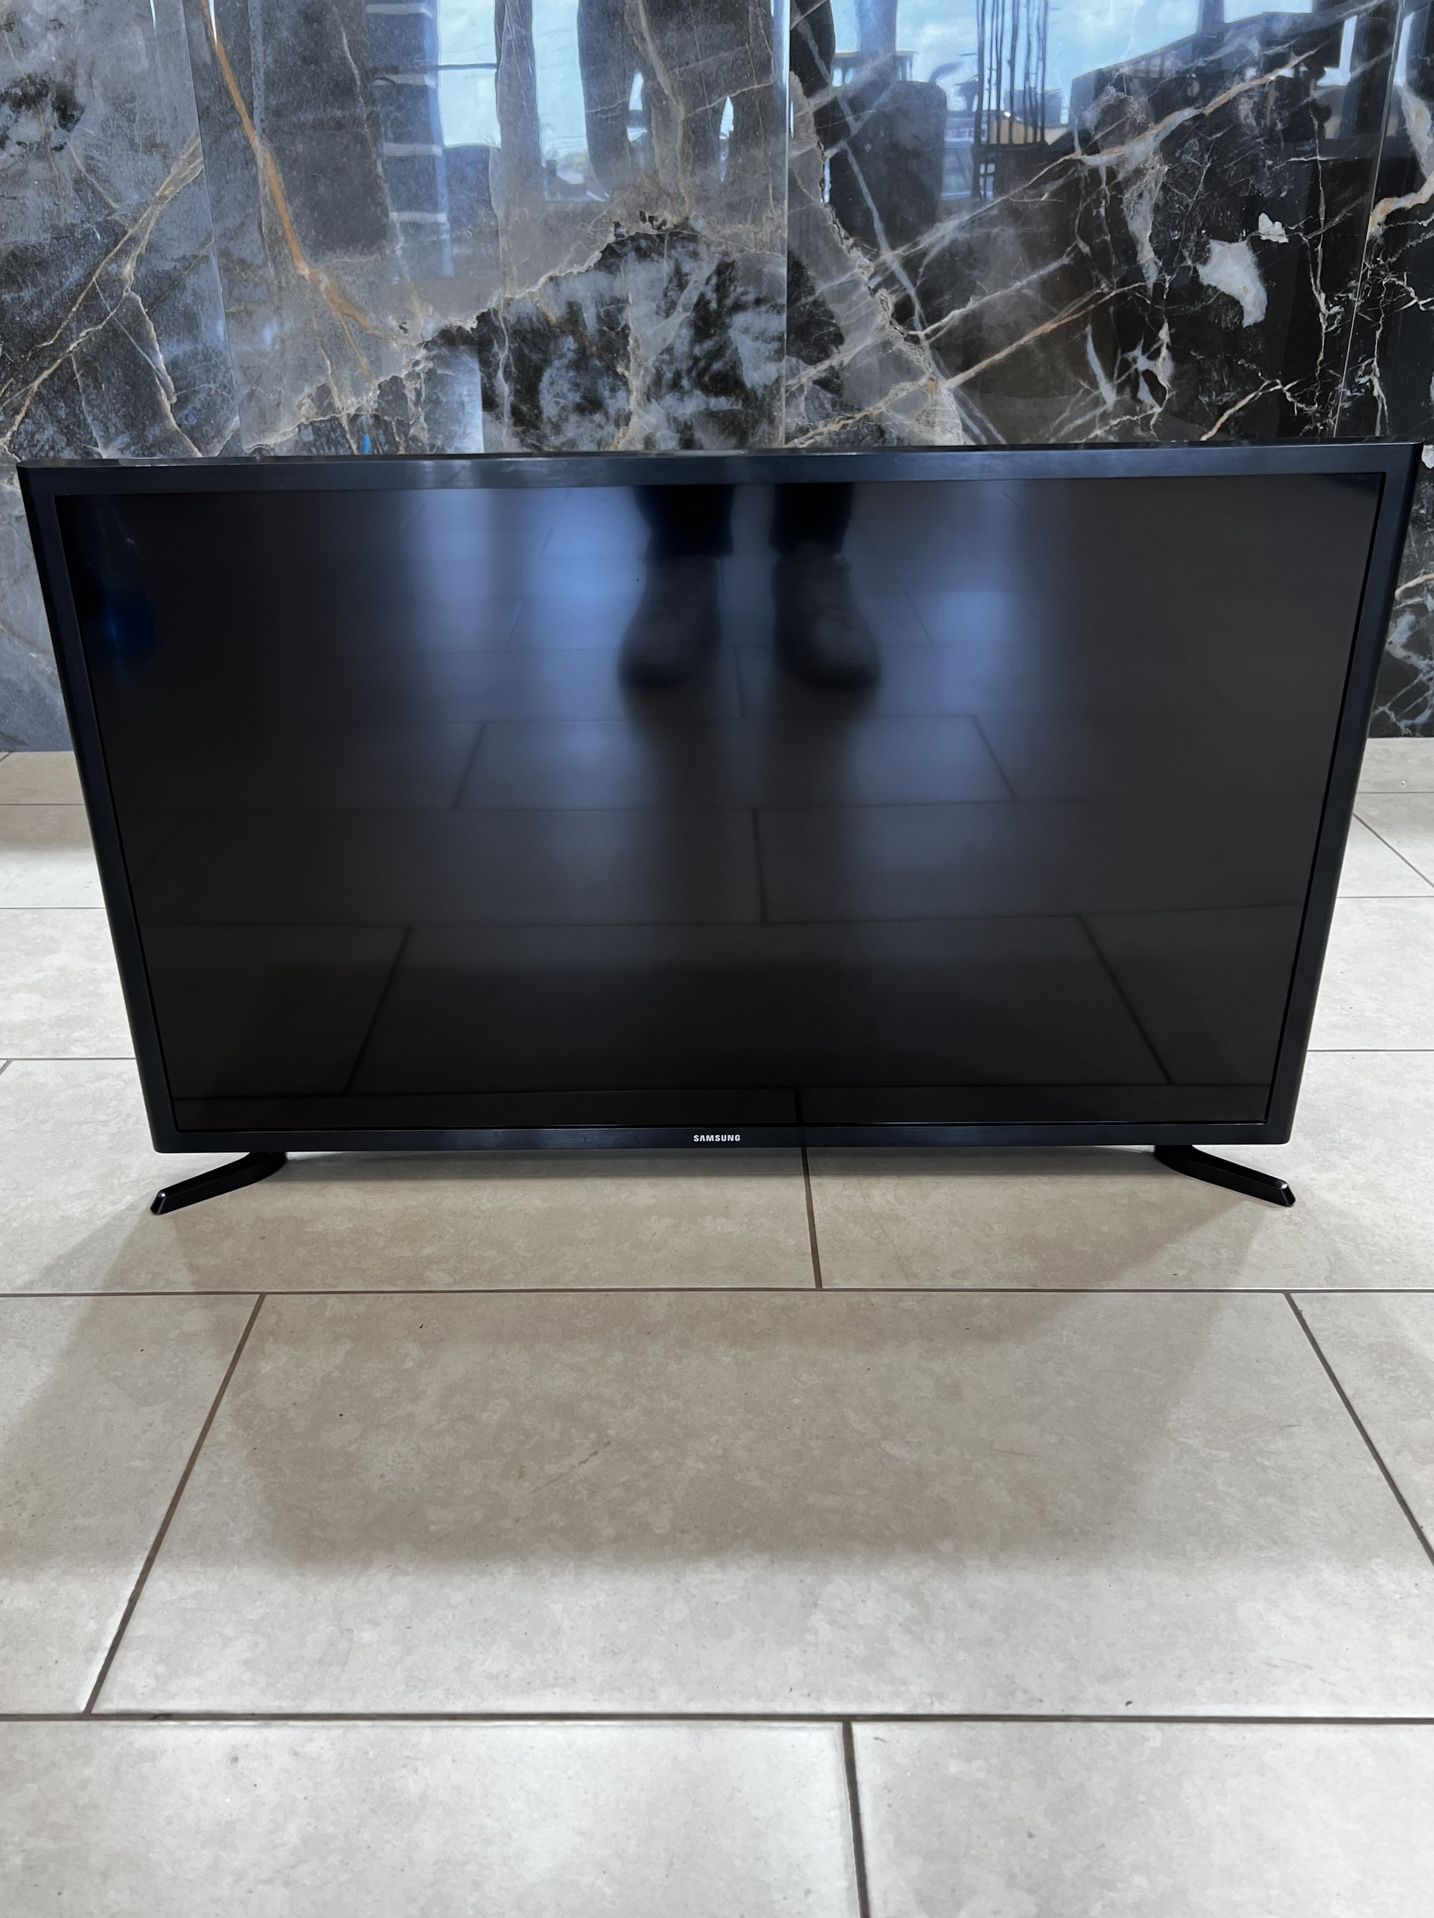 Samsung Smart TV - 32 inch UN32J525DAFXZA Version LS02